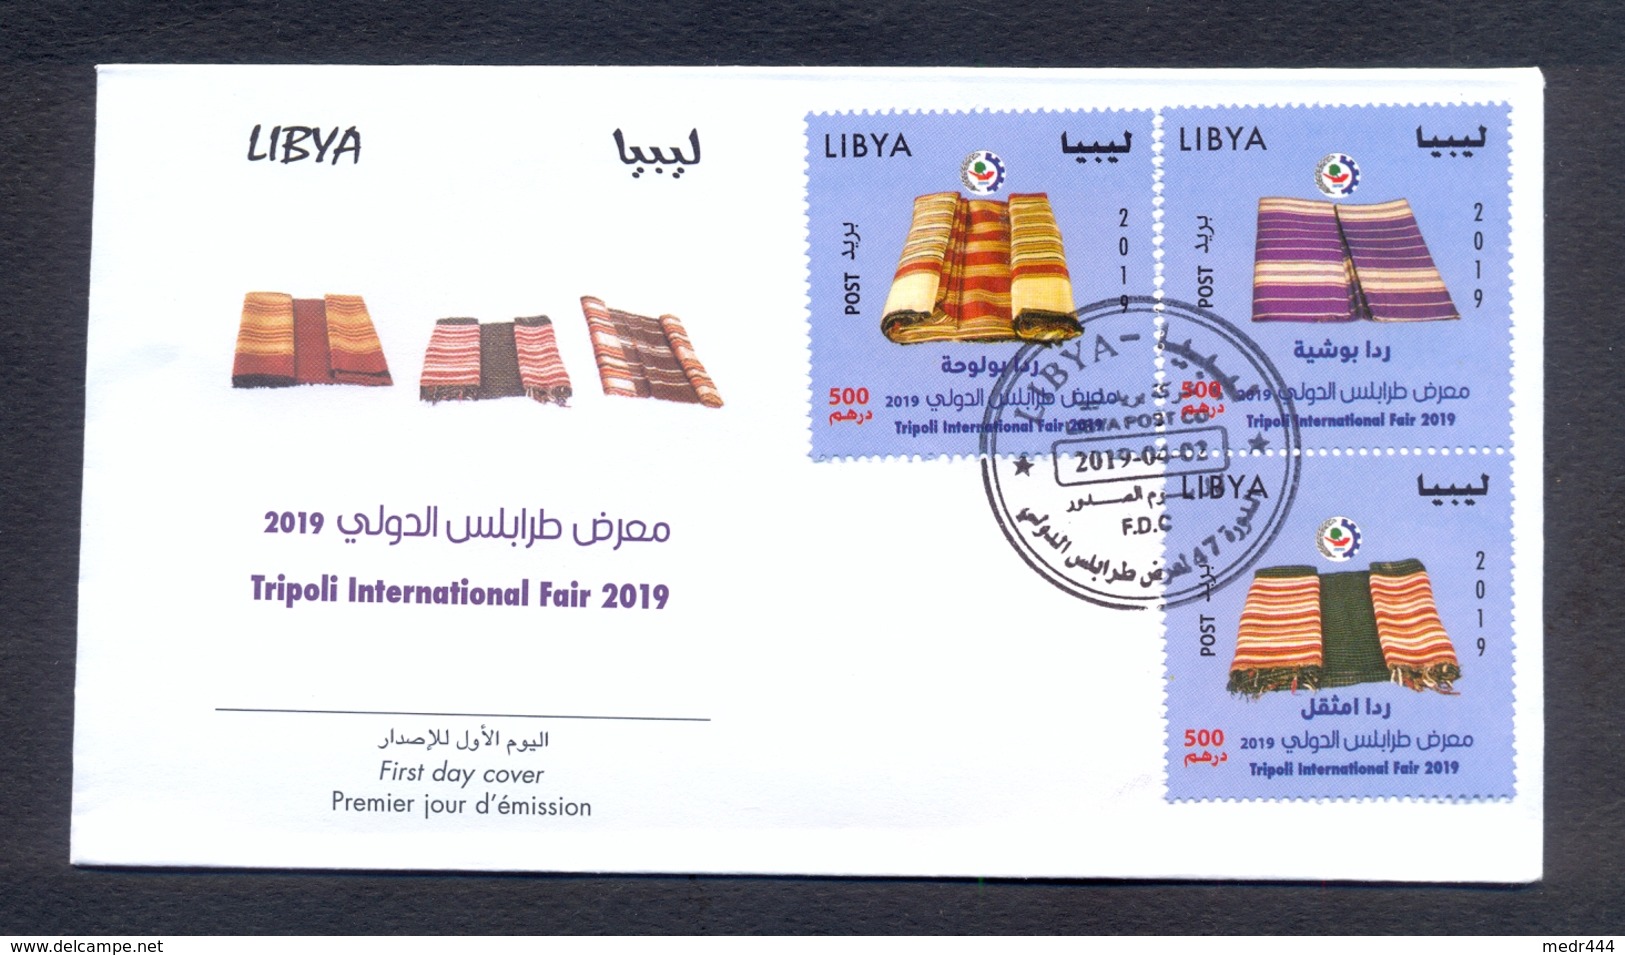 Libya 2019 - FDC - Tripoli International Fair 2019 - Excellent Quality - Libya